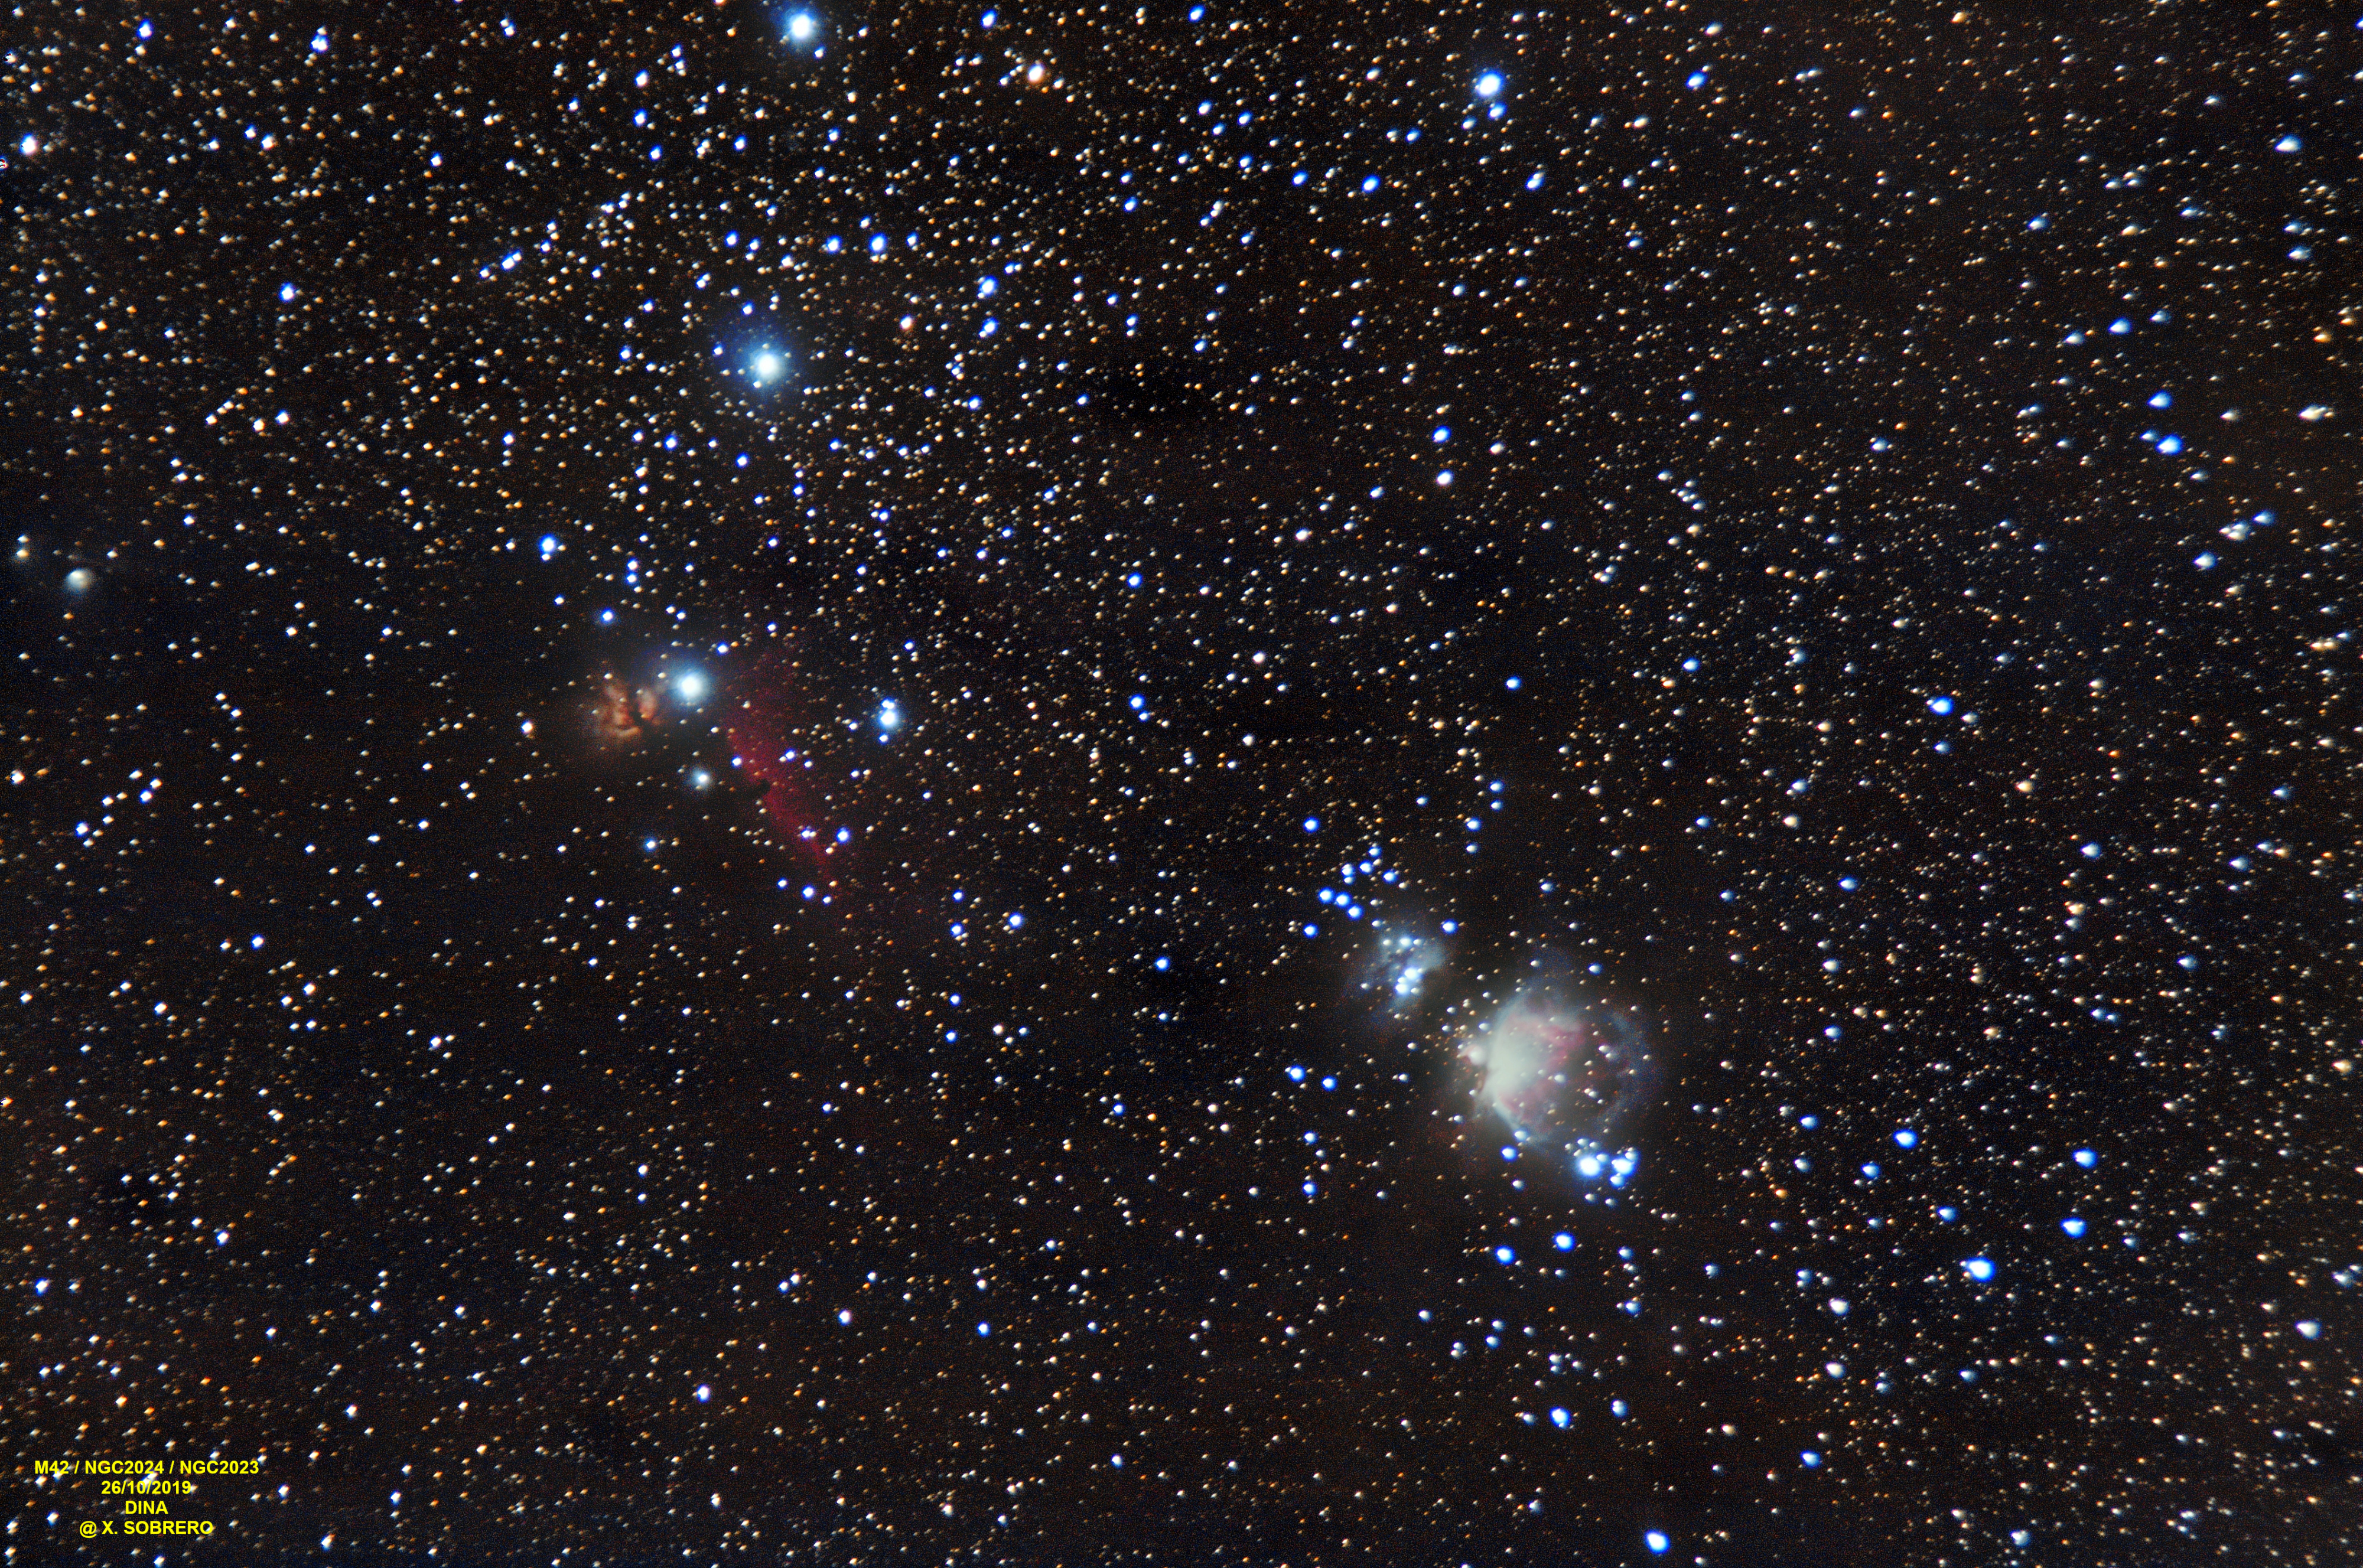 M42 / NGC2024 / Horsehead Nebulae